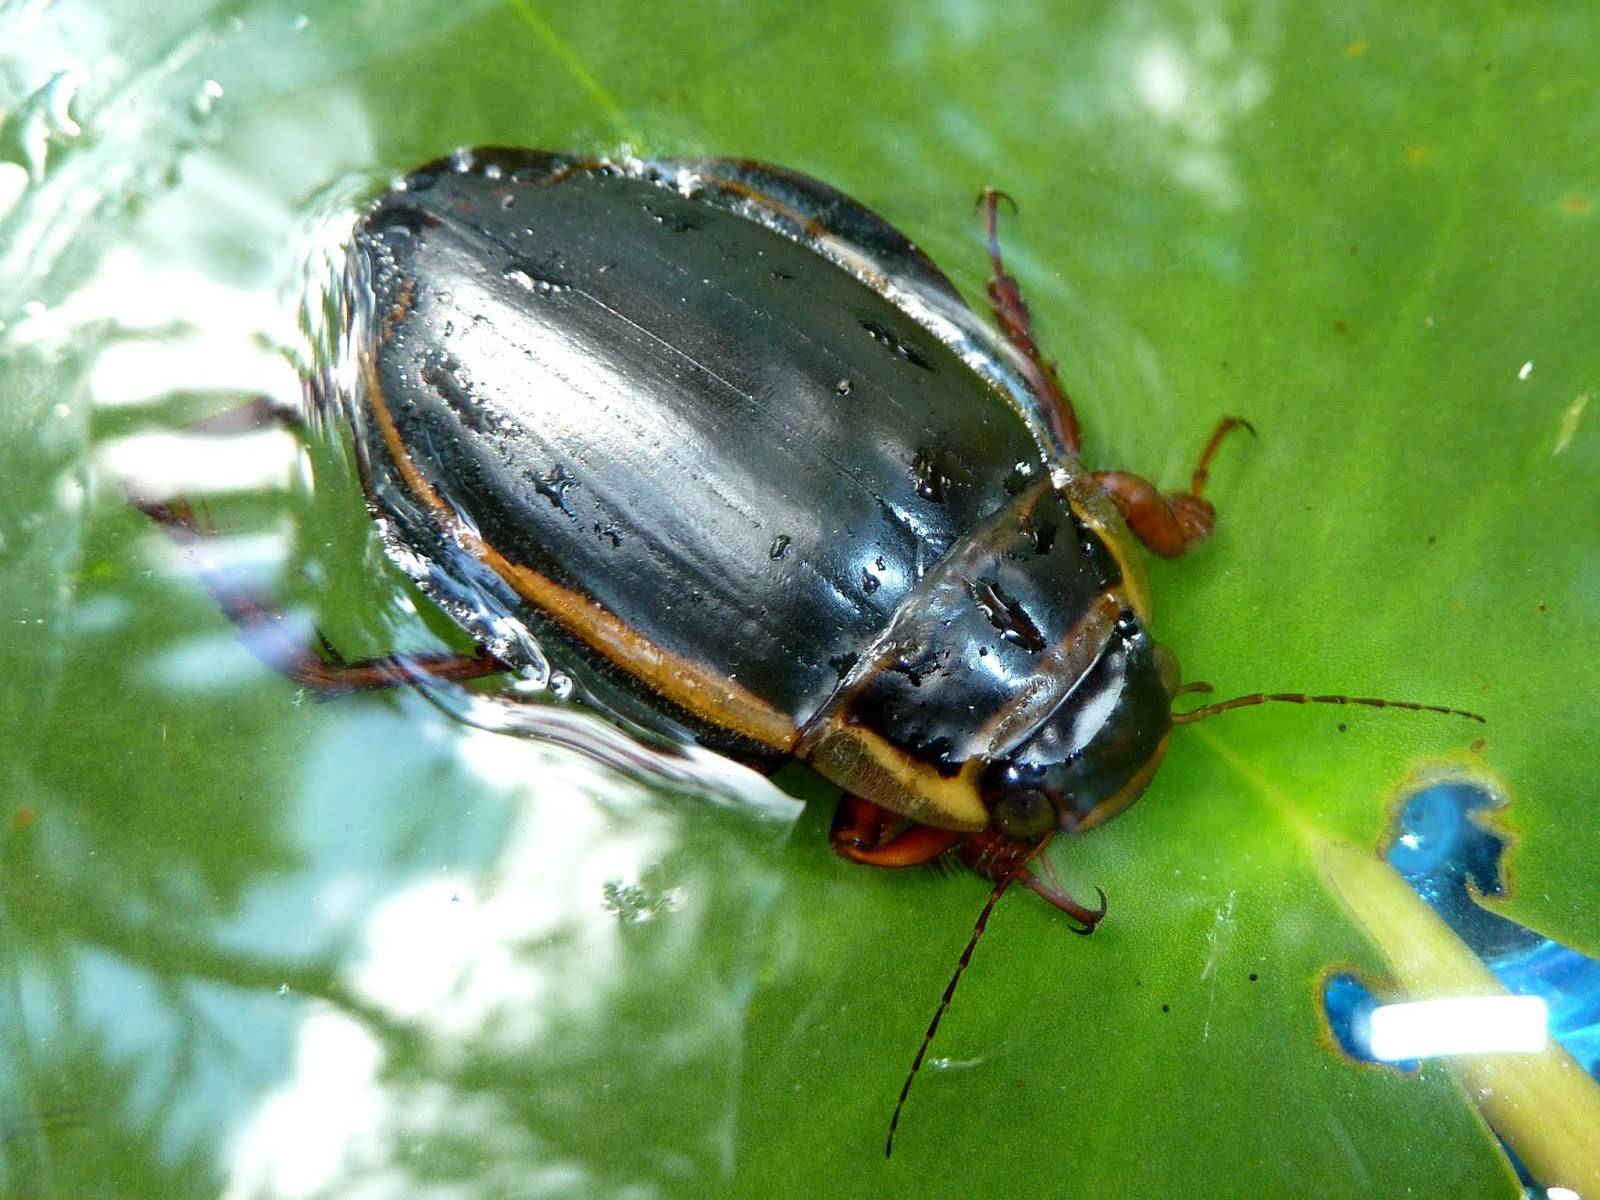 Жук плавунец — интересные факты о насекомом | vivareit